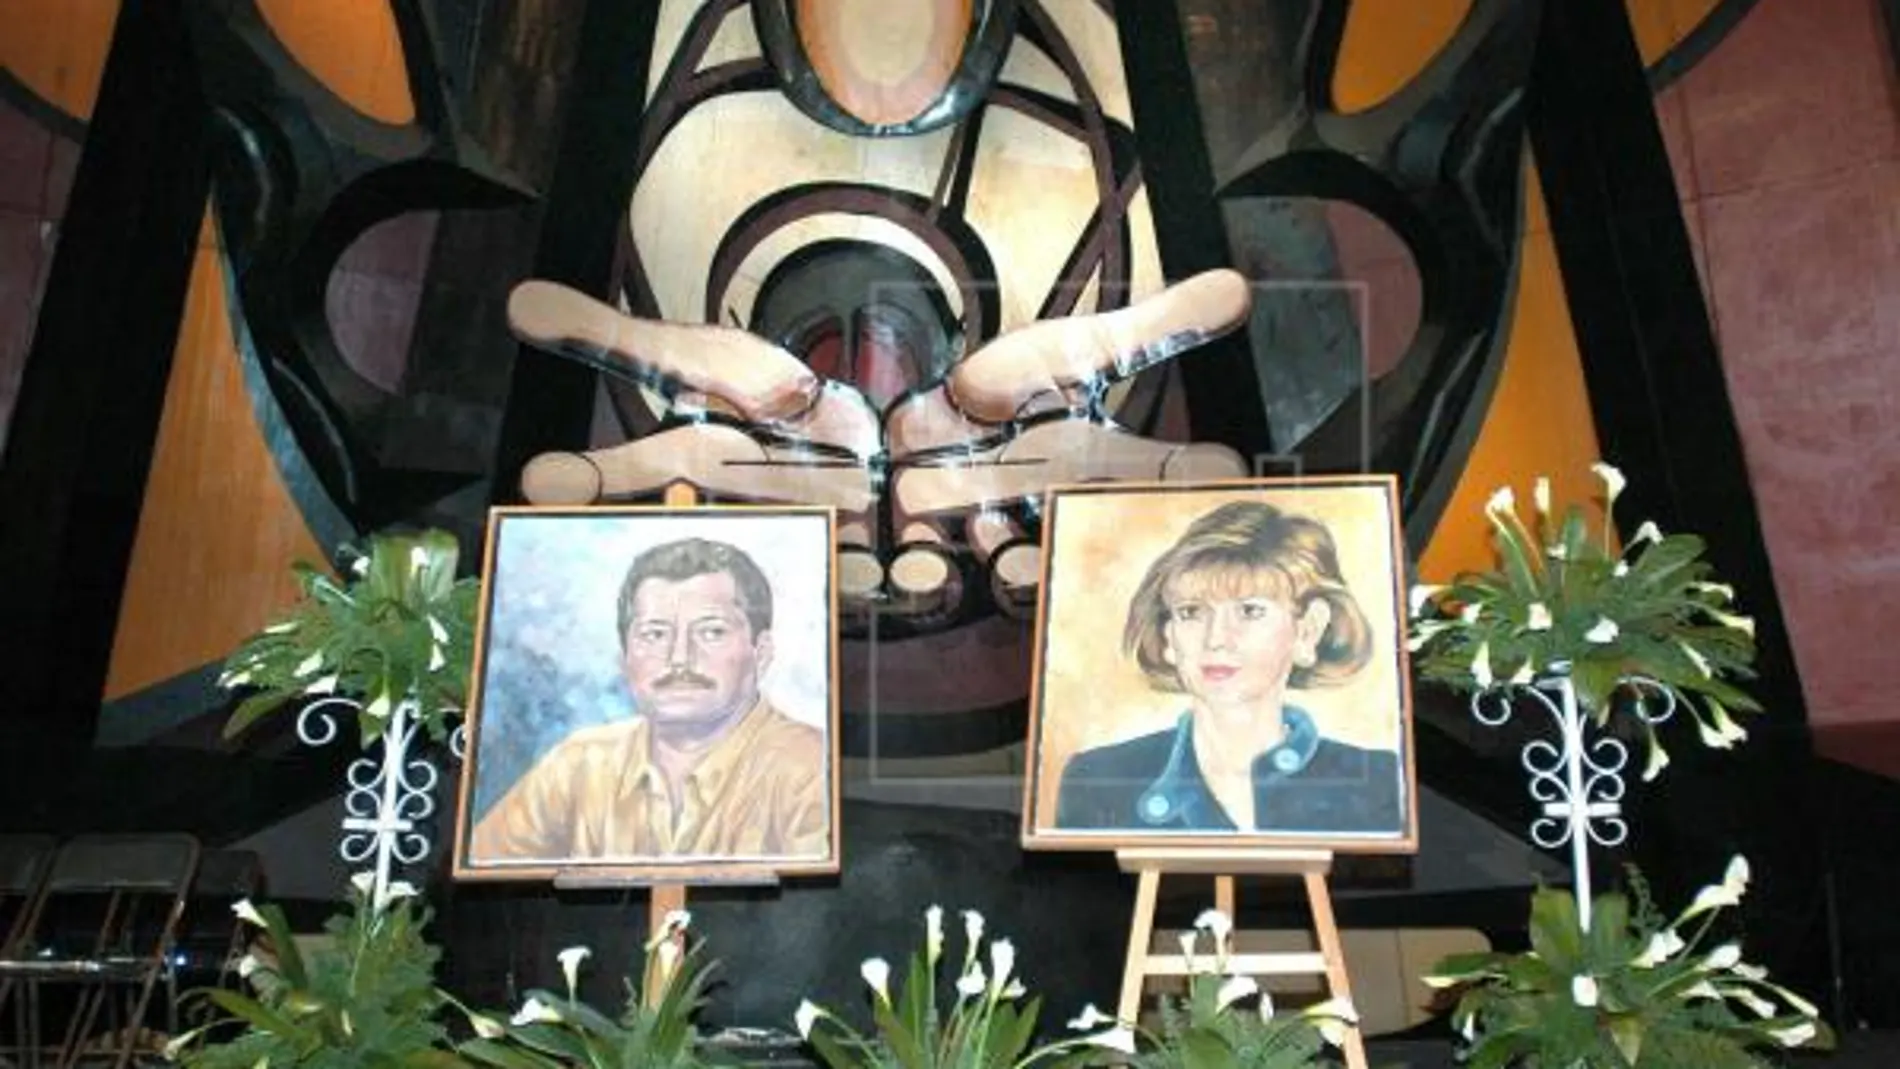 El cuadro de Luis Donaldo Colosio (izda), candidato del PRI a la presidencia de México asesinado en 1994, y de su esposa Diana Laura Riojas de Colosio (dcha), muerta meses después del crimen, son exhibidos en el Polyforum Cultural Siqueiros, de la capital mexicana